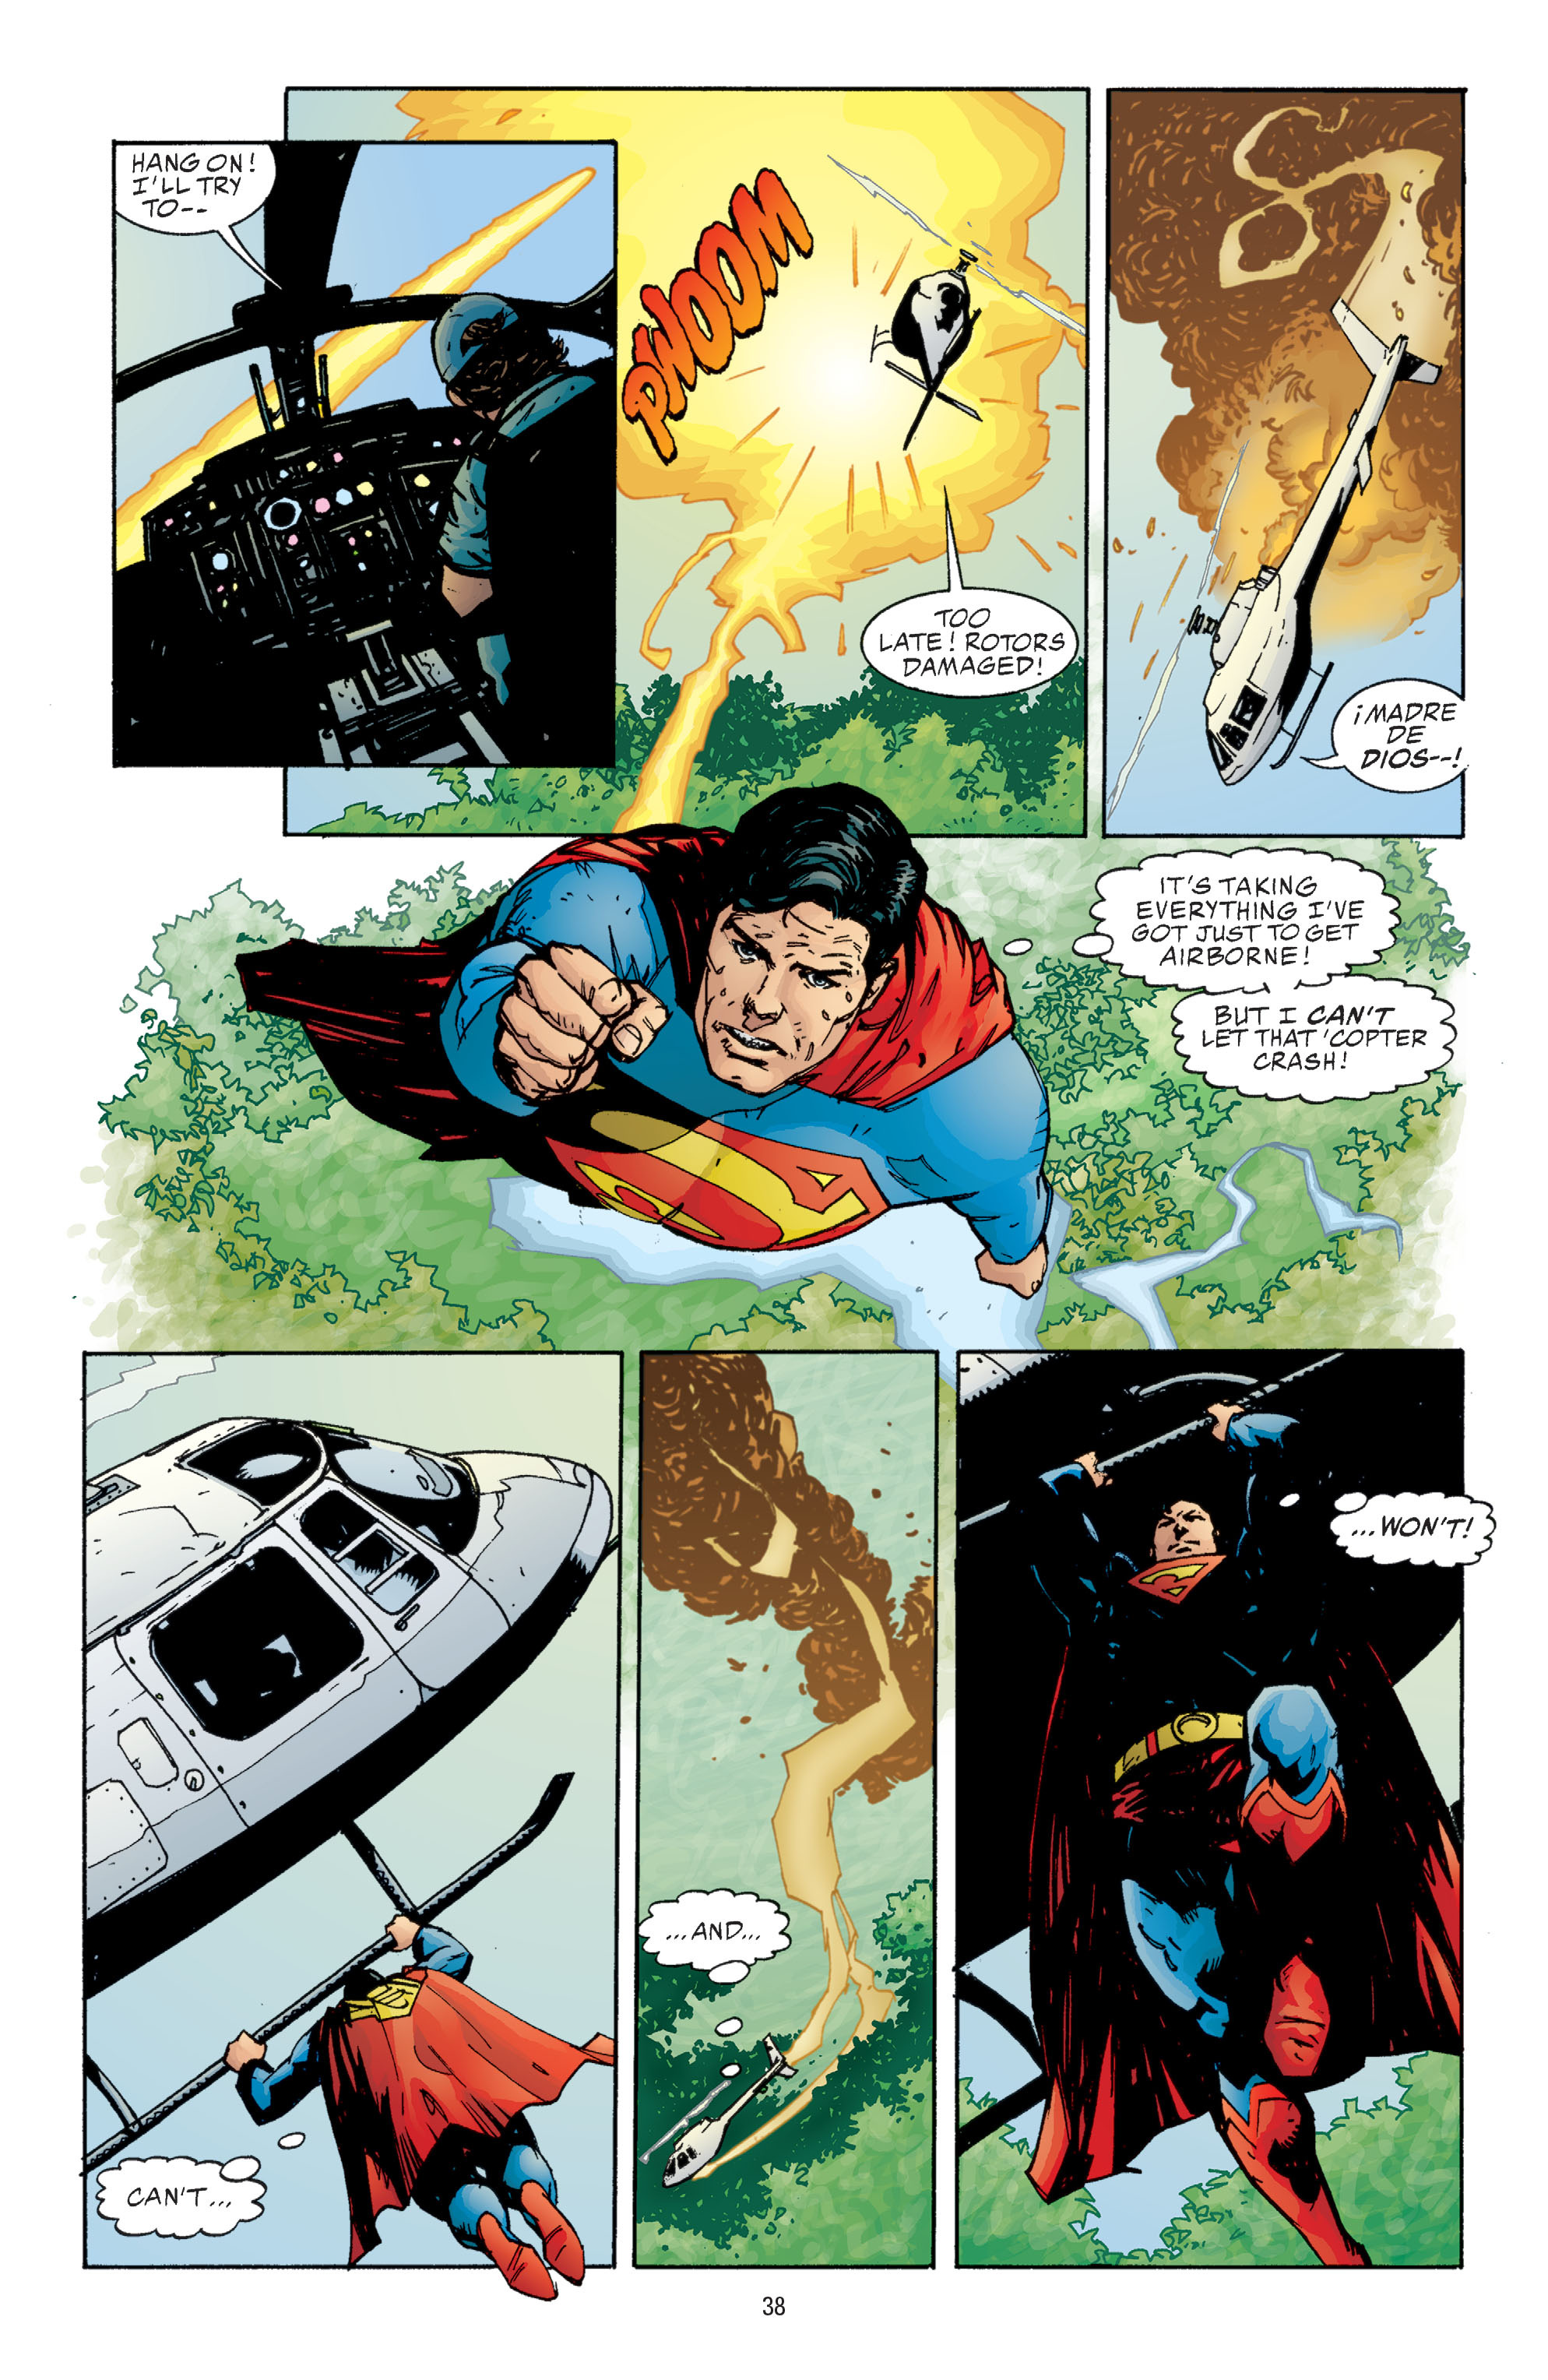 DC Comics/Dark Horse Comics: Justice League Full #1 - English 36